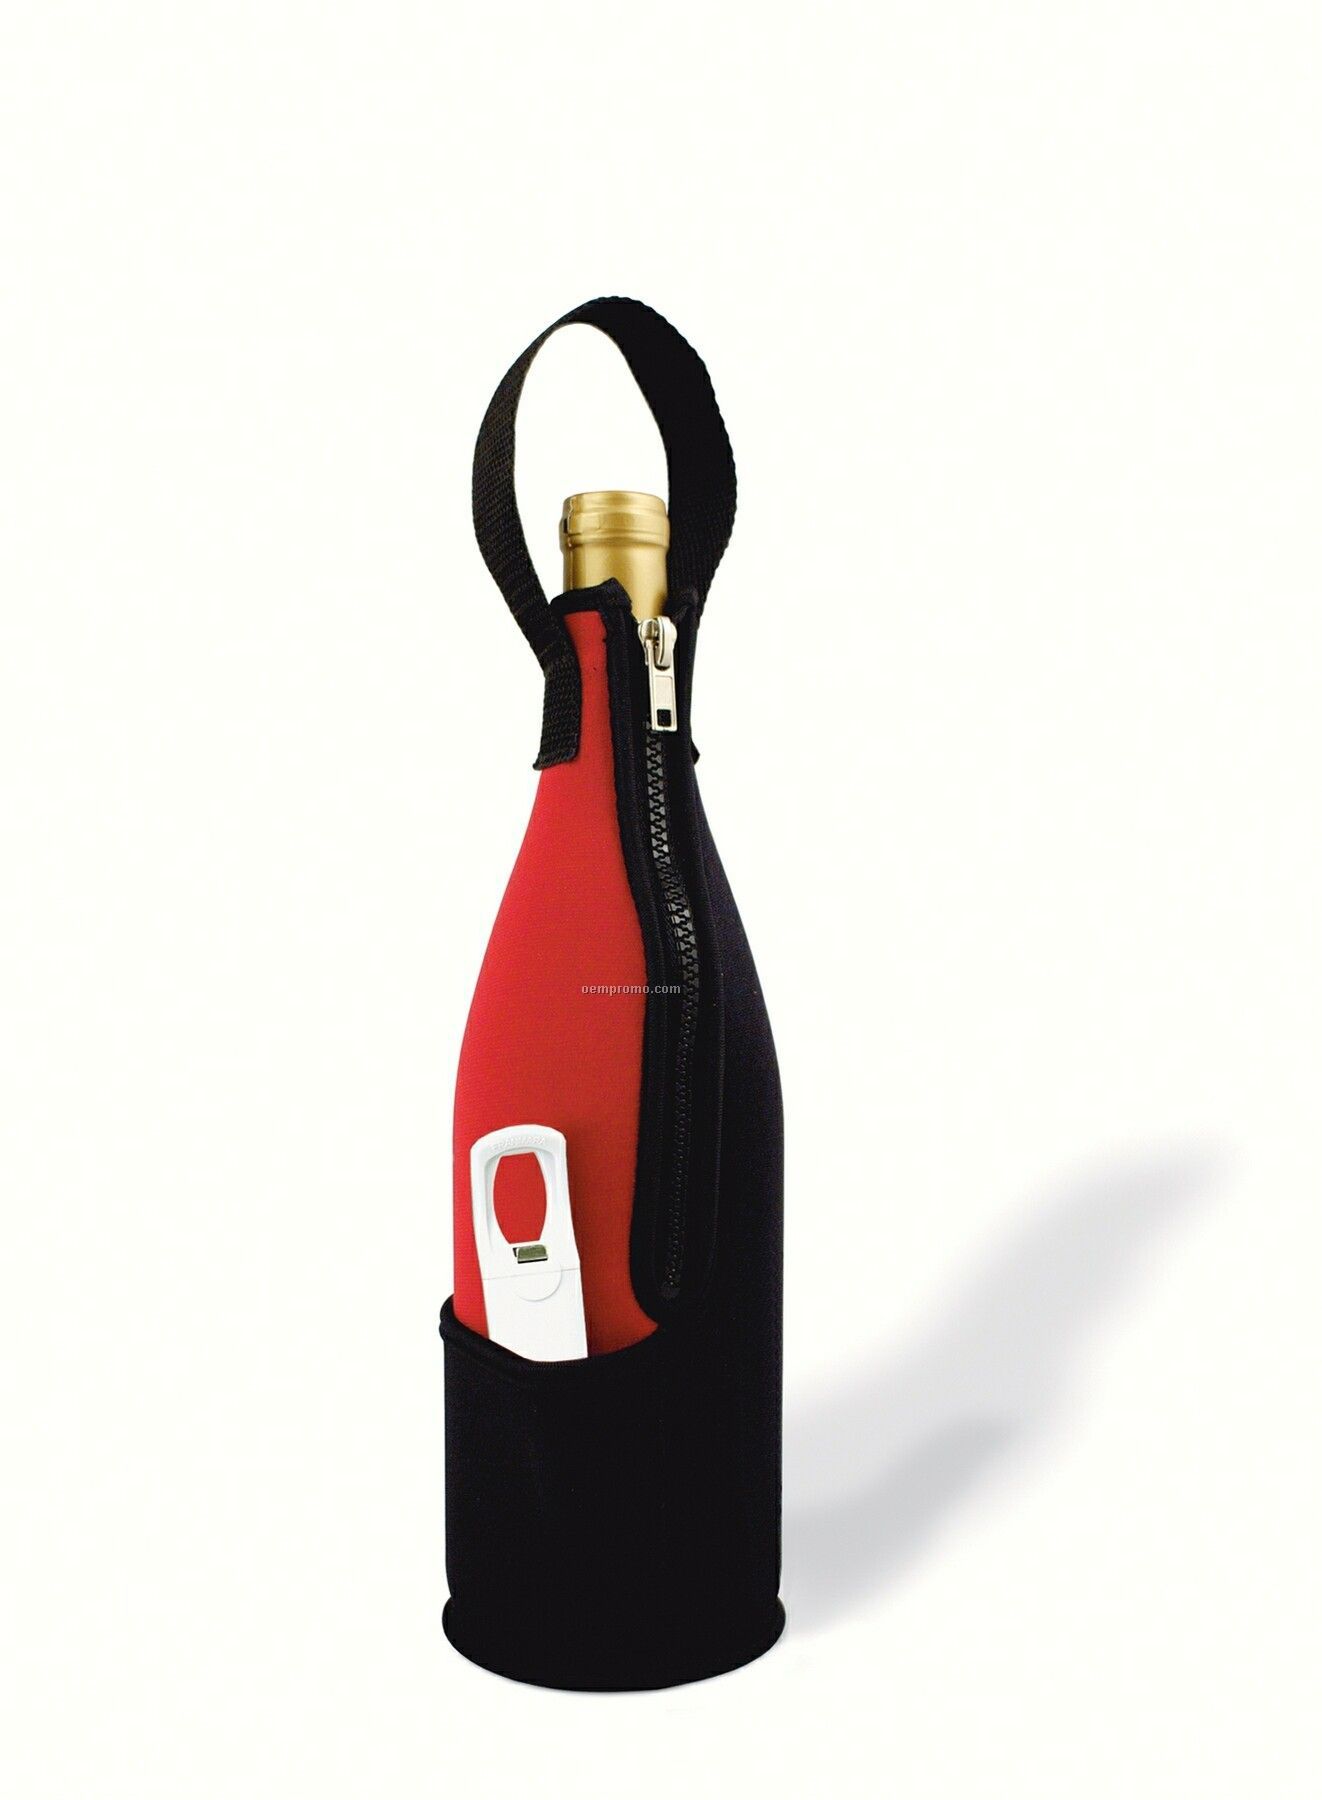 Zip-n-go Neoprene Wine Bag With Plastic Traveler's Corkscrew